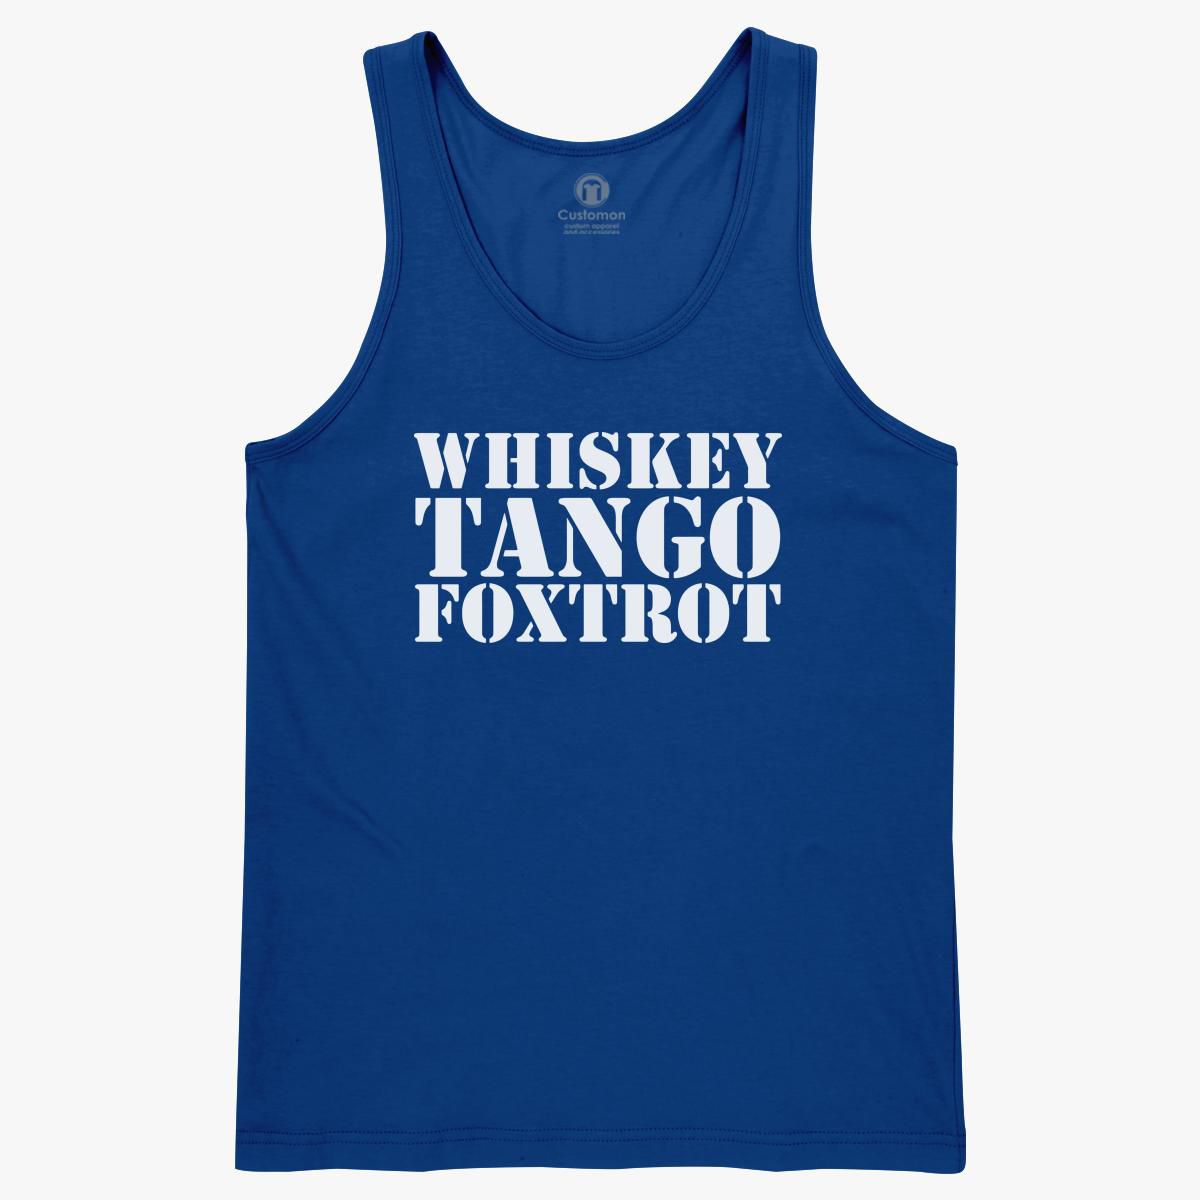 Whiskey Tango Foxtrot by UndergroundShirts on Etsy